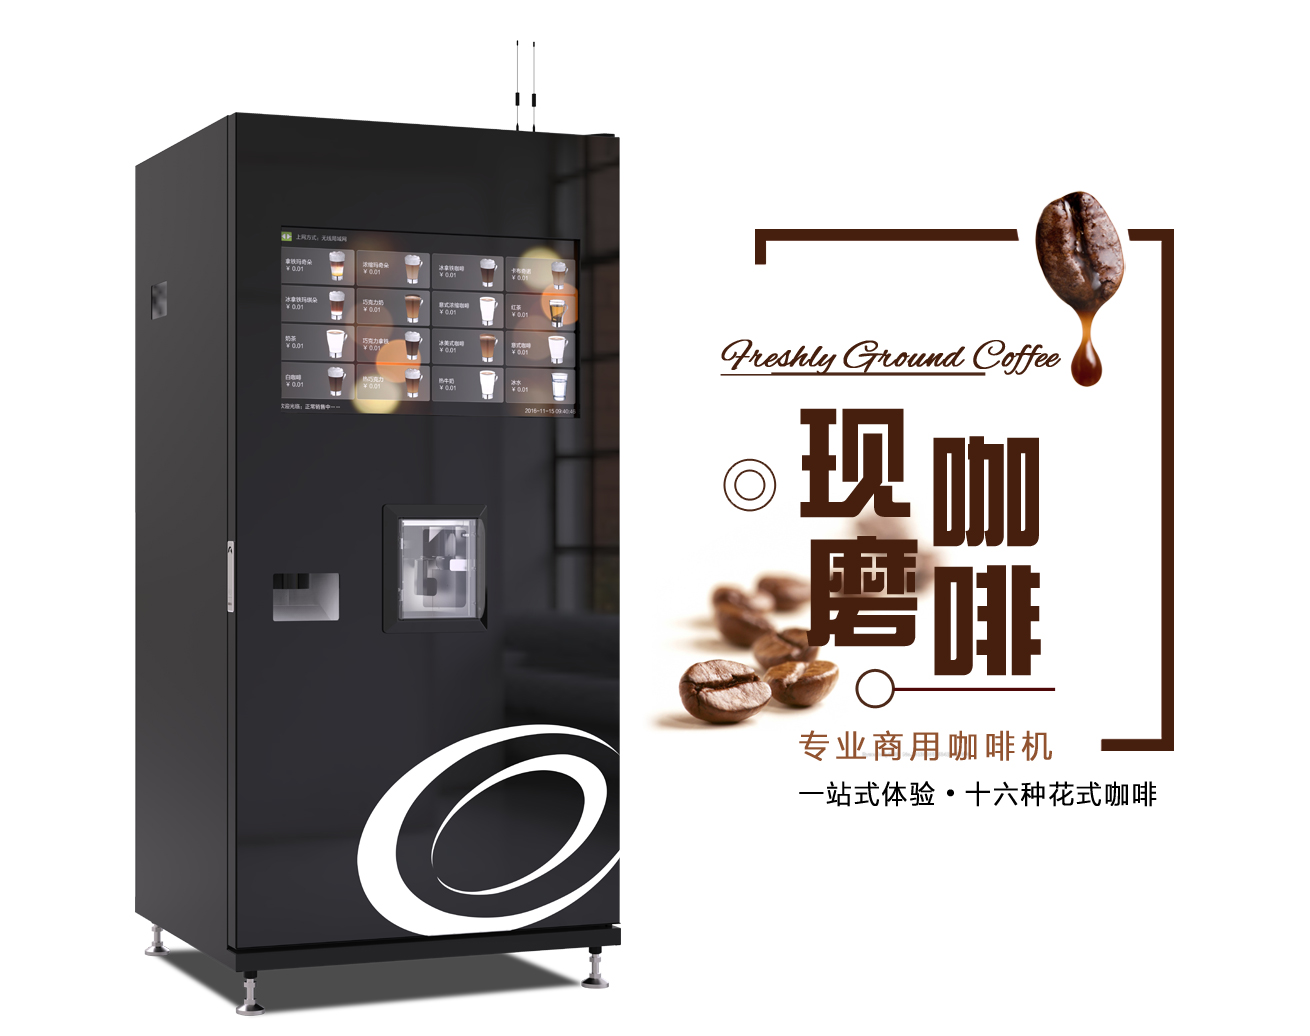 咖啡机品牌全自动咖啡机推荐及价格介绍